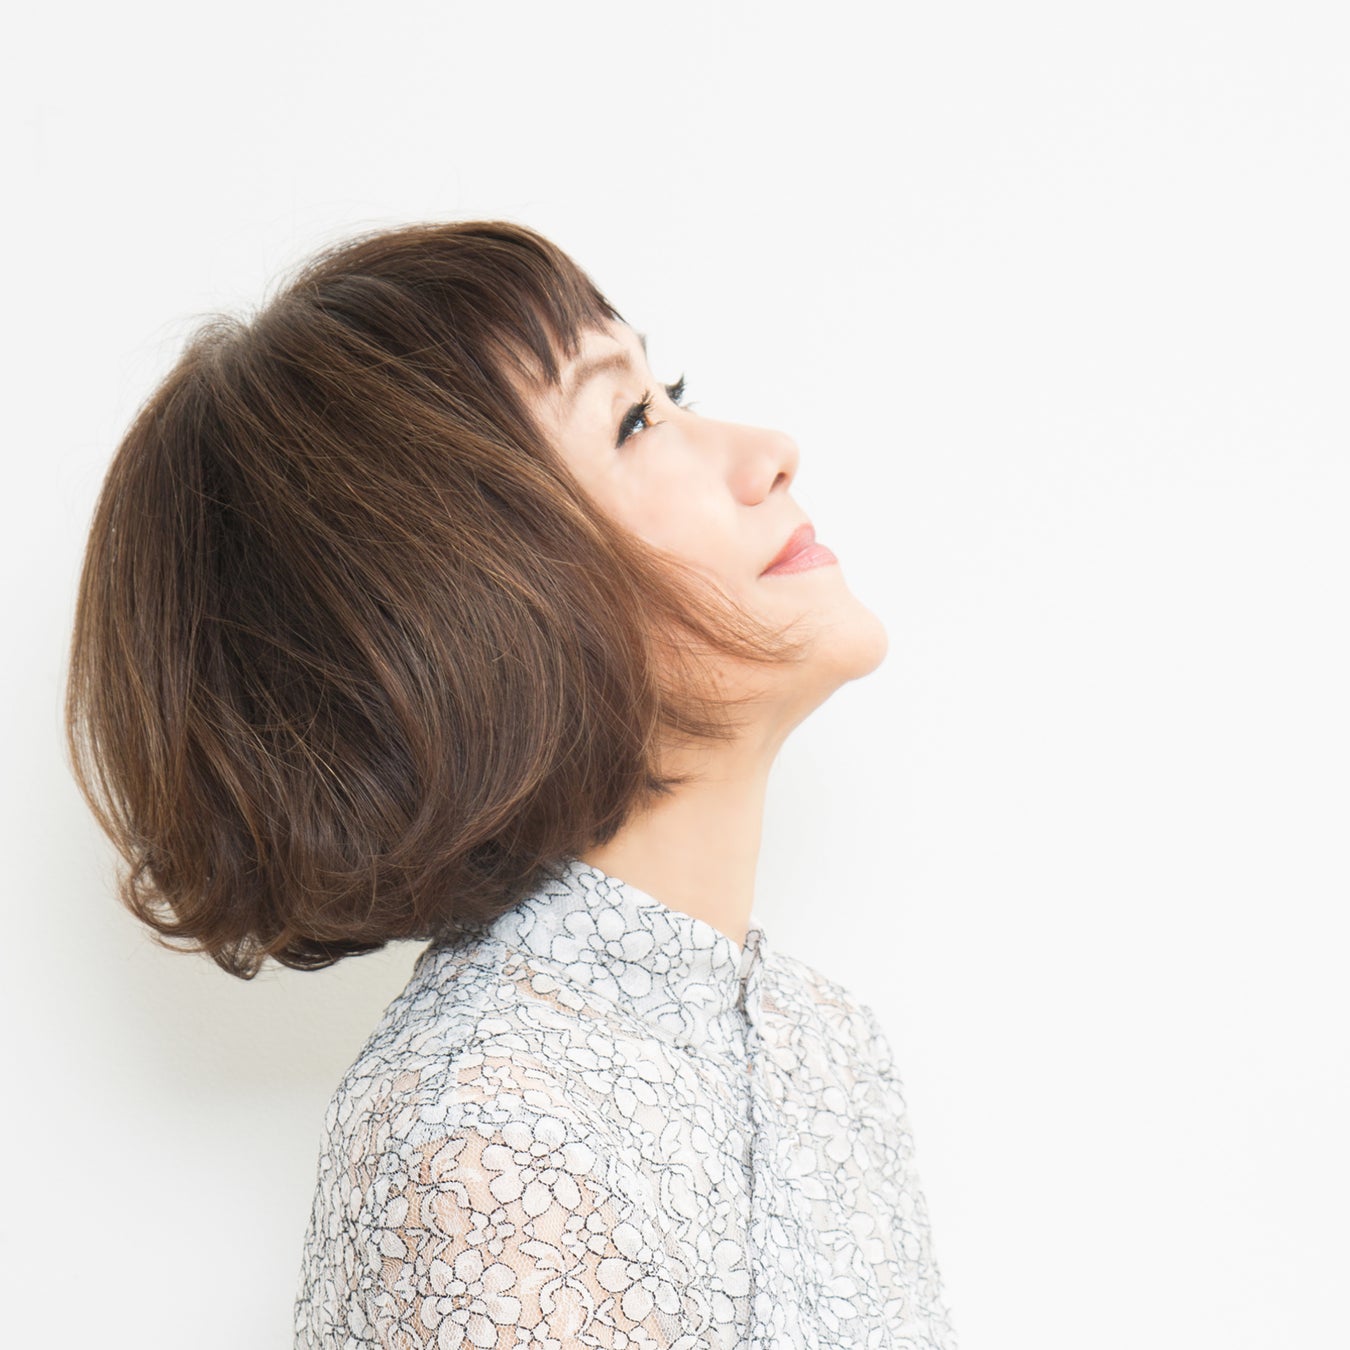 大貫妙子、2曲の新録作品が2月25日配信スタート